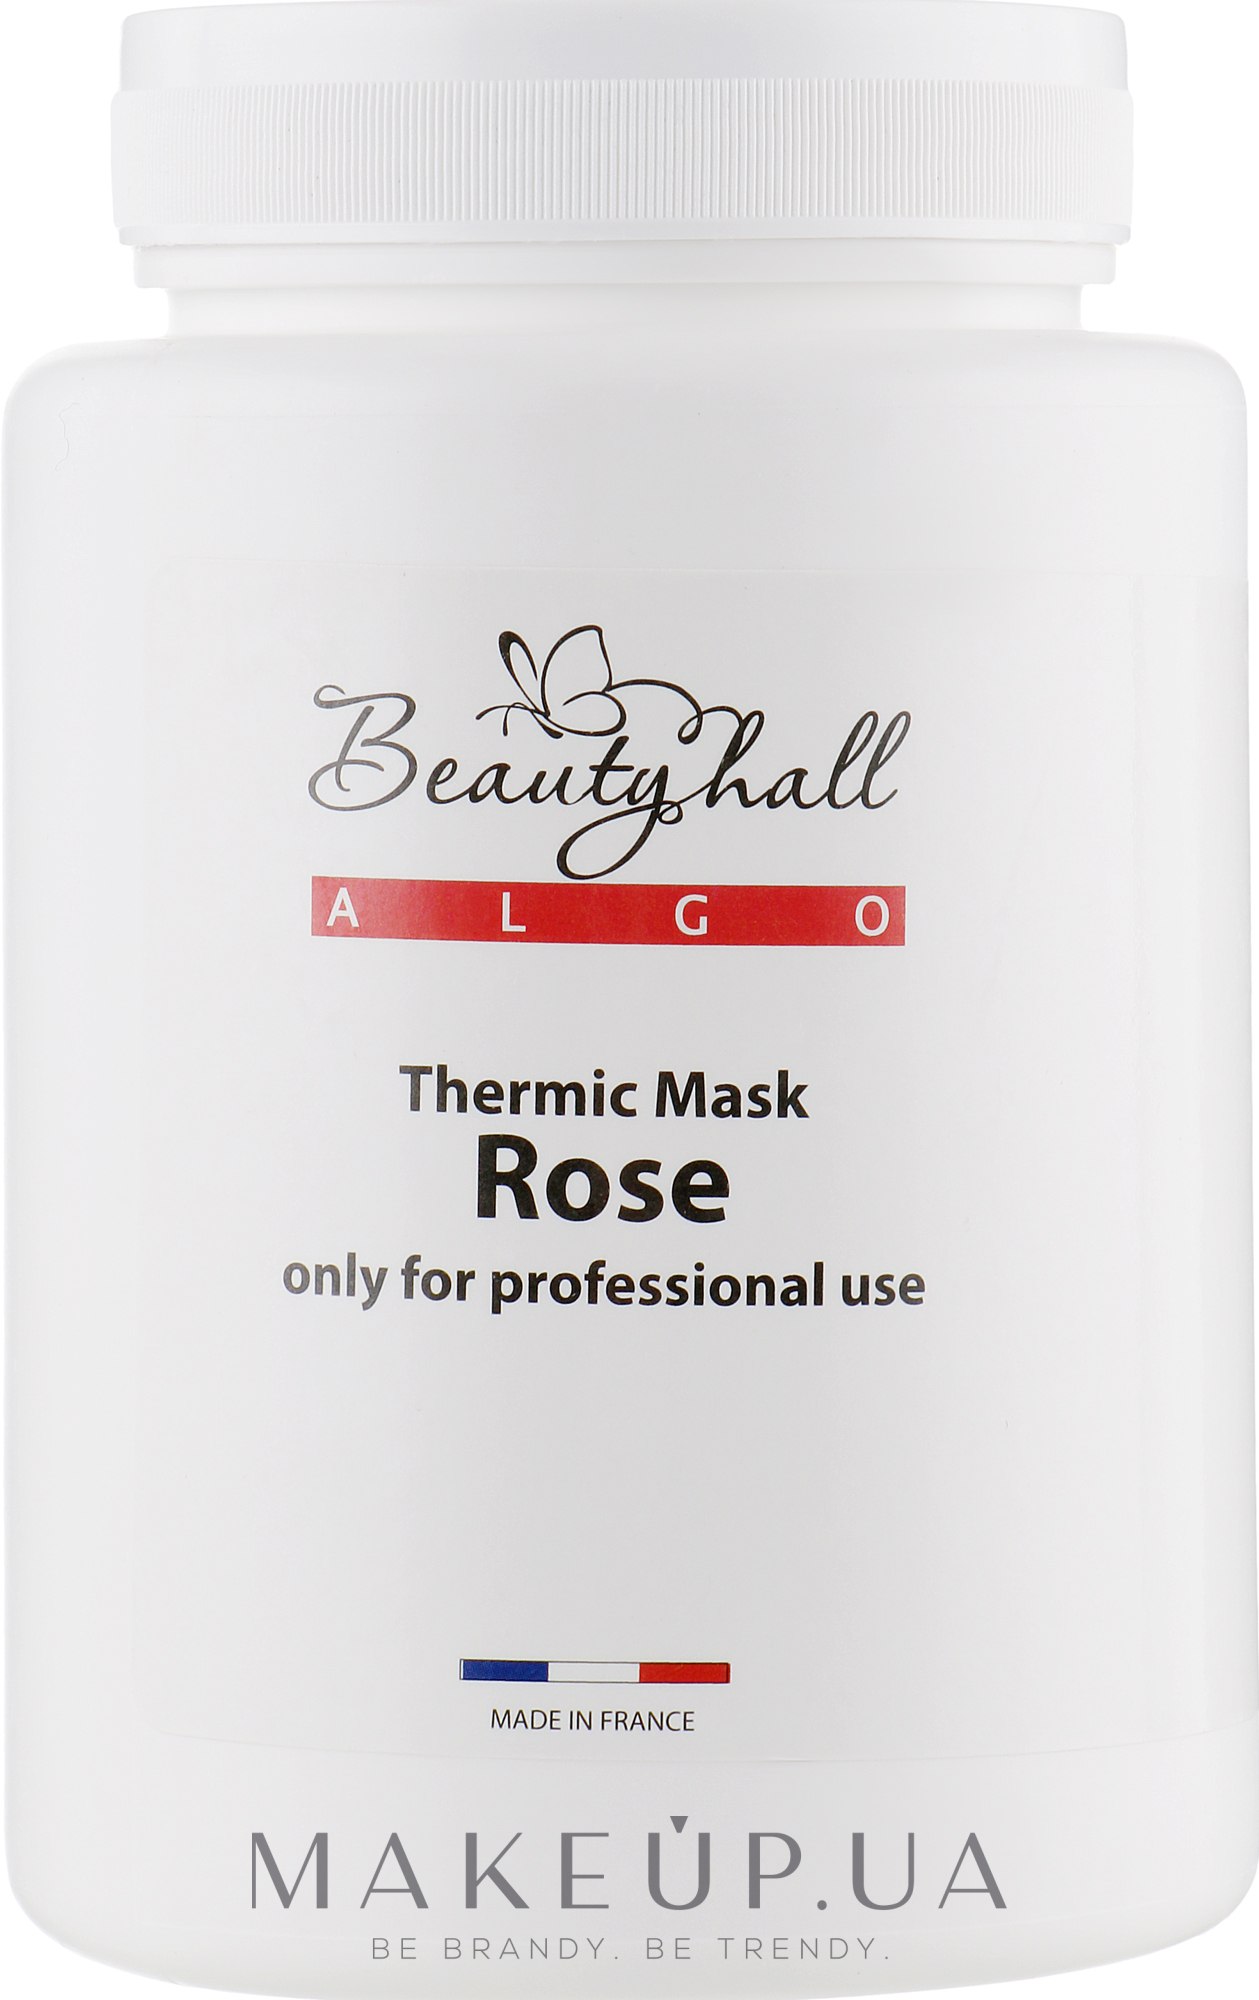 Гипсовая термомоделирующая маска "Роза" - Beautyhall Algo Thermic Mask Rose — фото 200g